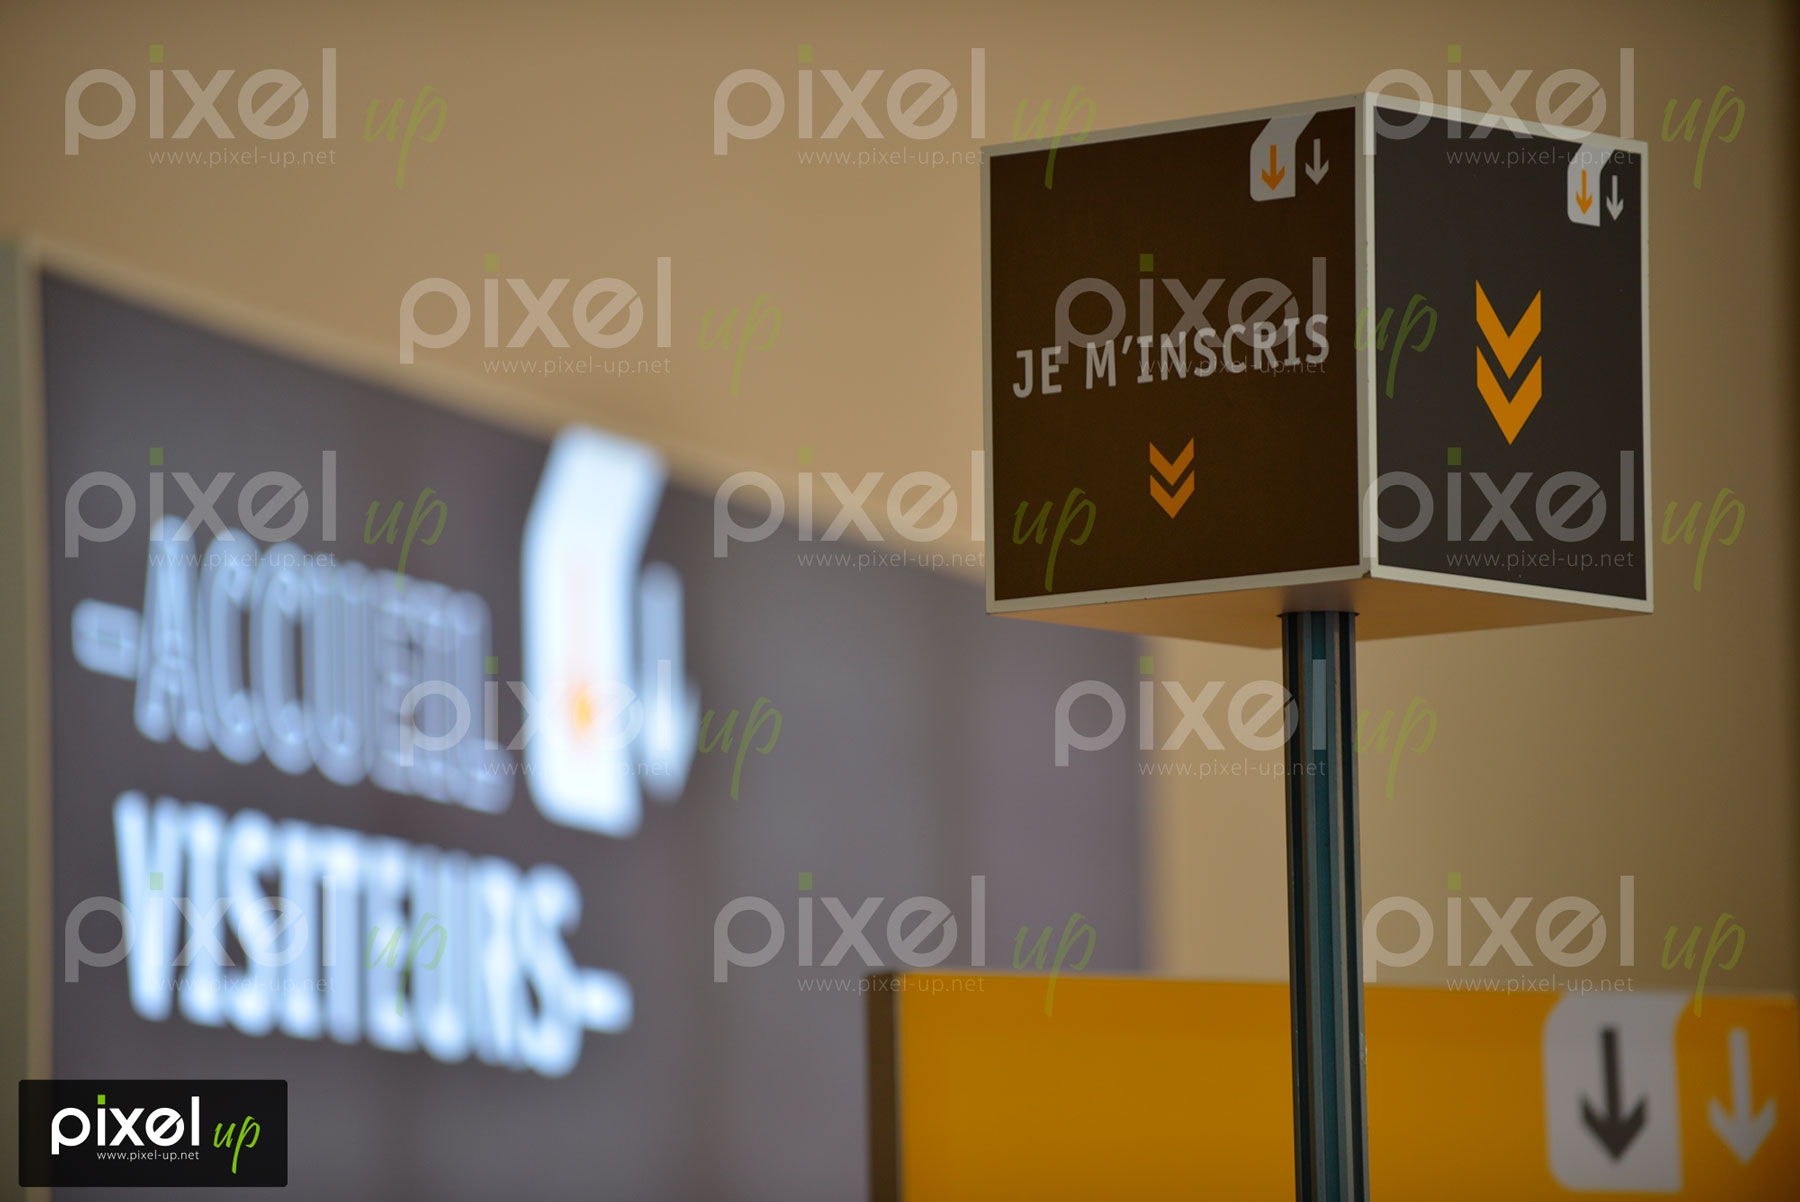 Photographe Pixel up - Reportage congrès